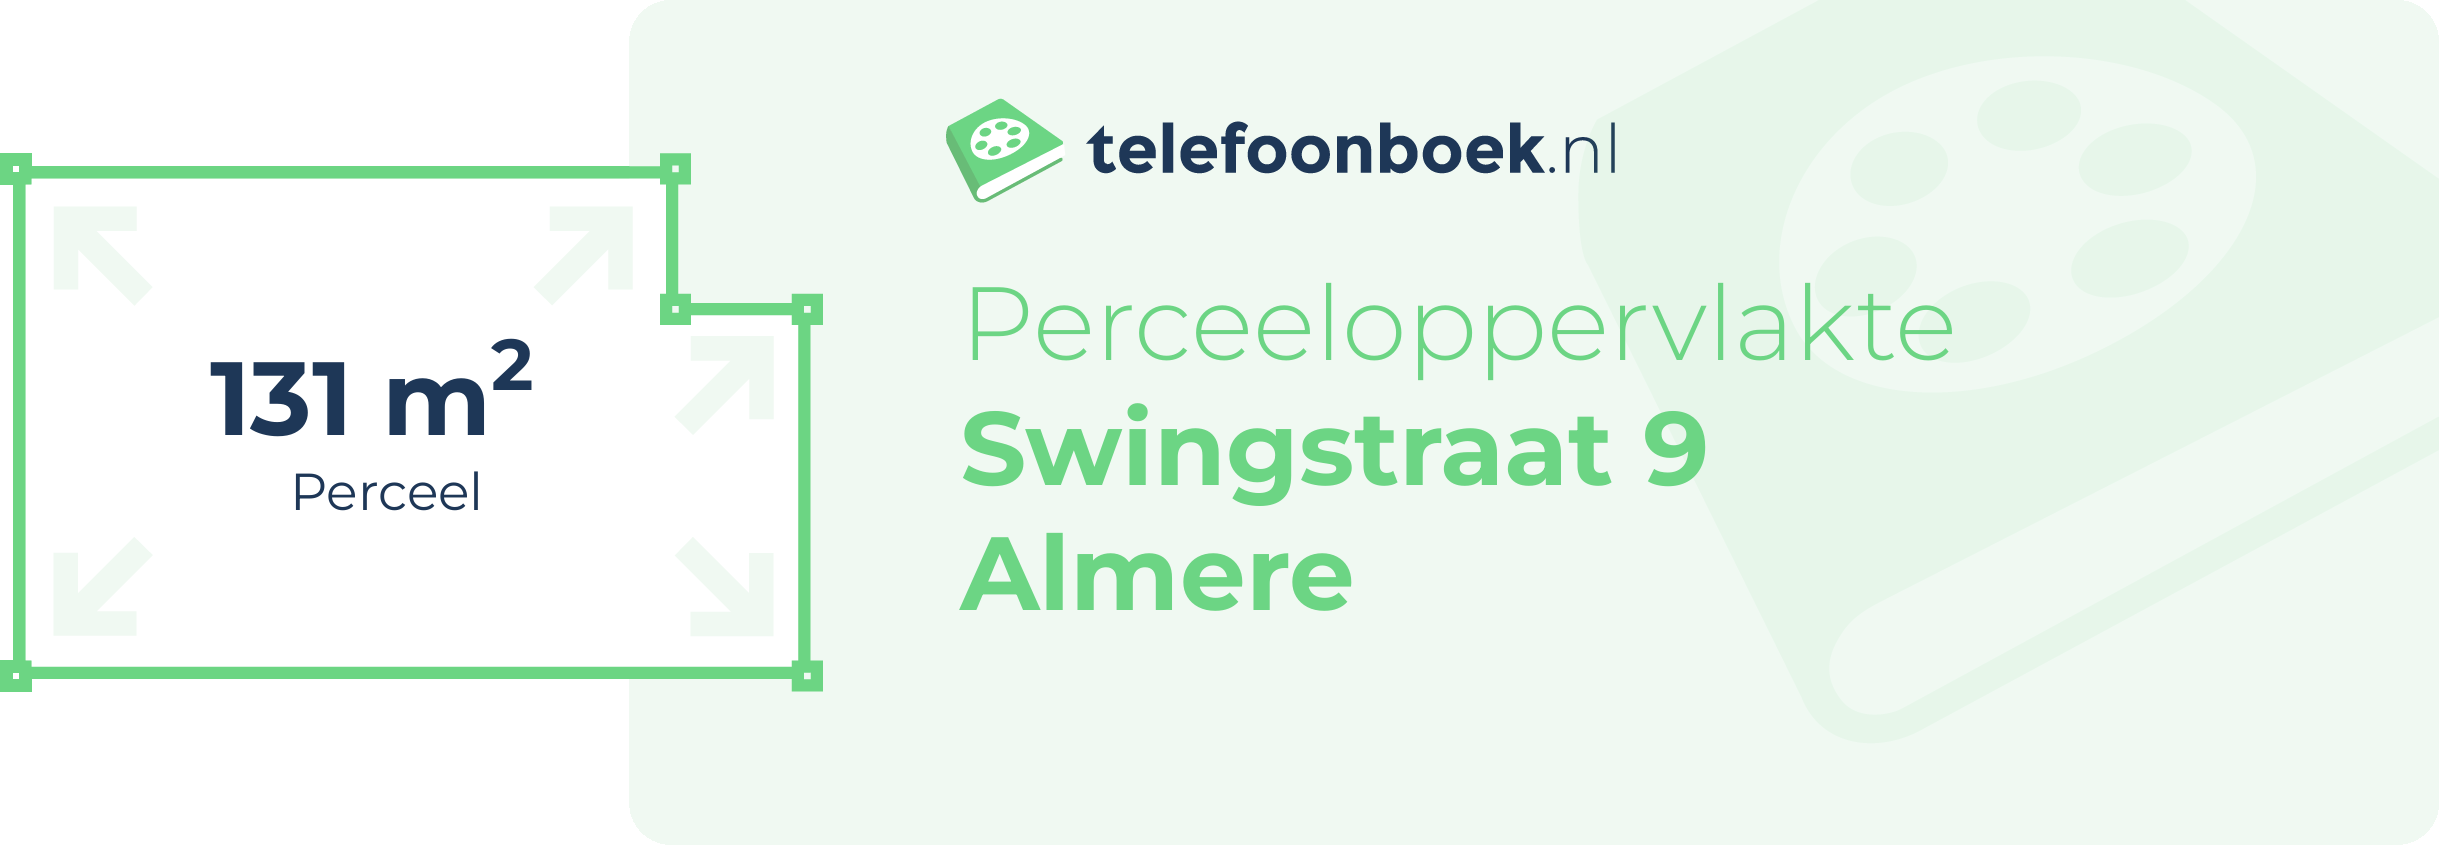 Perceeloppervlakte Swingstraat 9 Almere